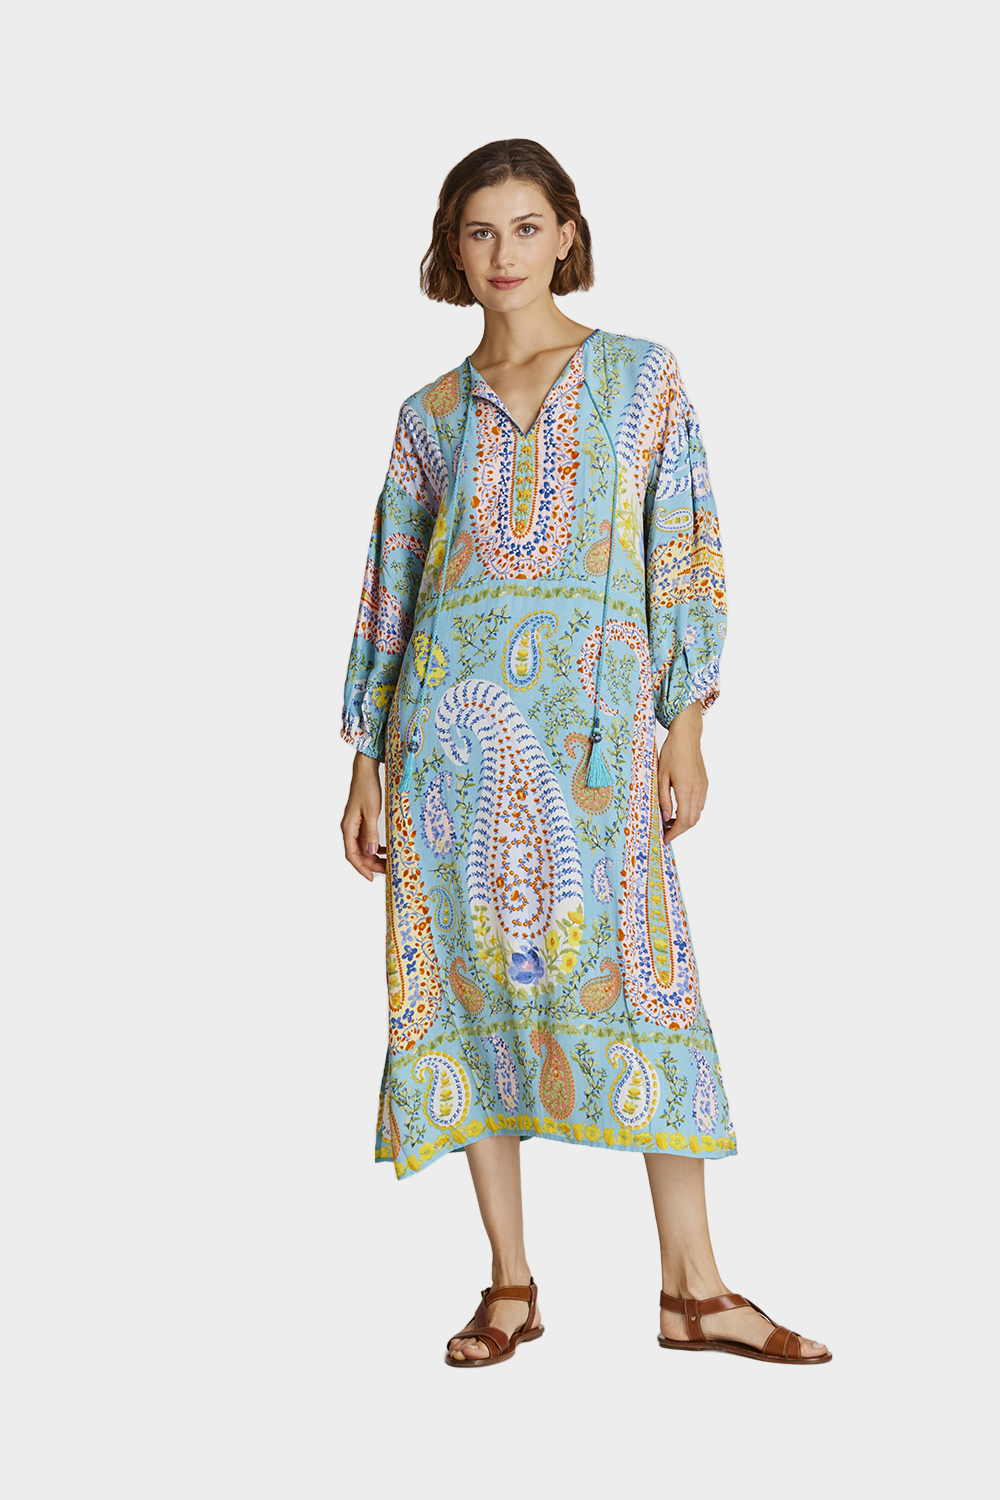 שמלה ארוכה לנשים הדפס פייזלי RENE DERHY Vendome online | ונדום .